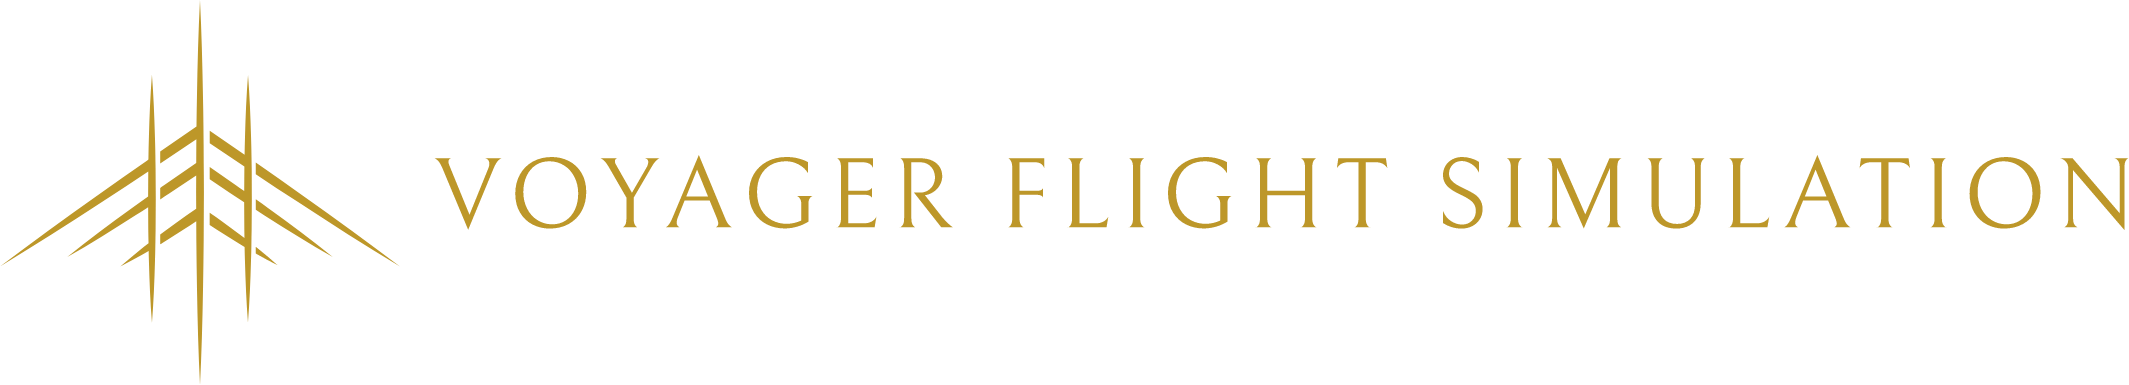 Voyager Flight Simulation Logo